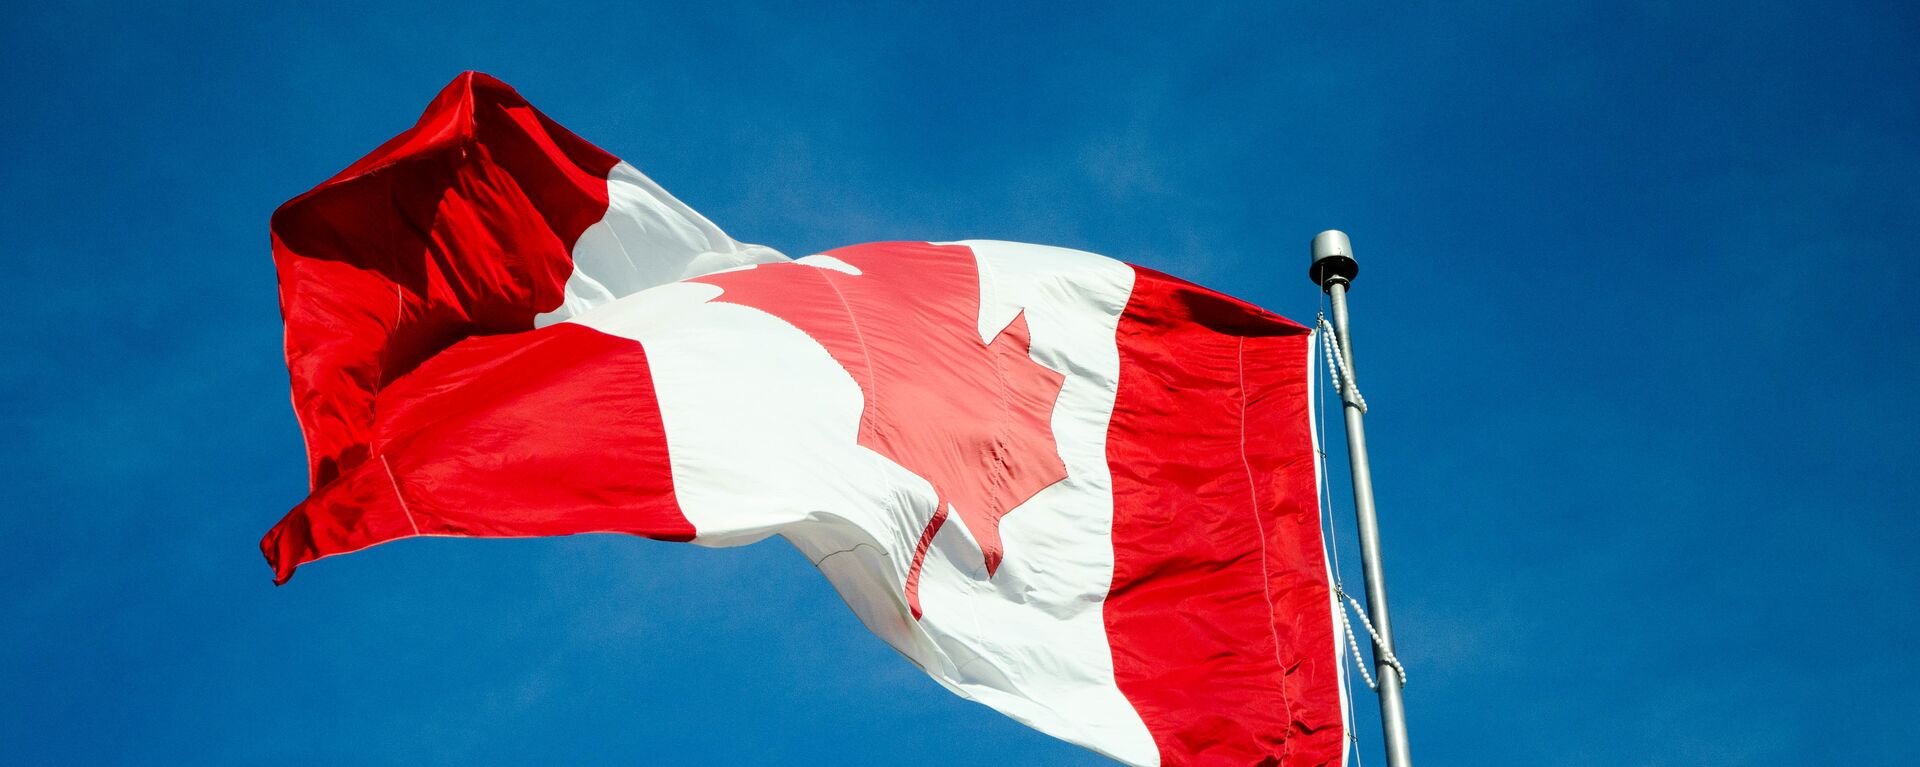 Bandera de Canadá - Sputnik Mundo, 1920, 24.03.2021